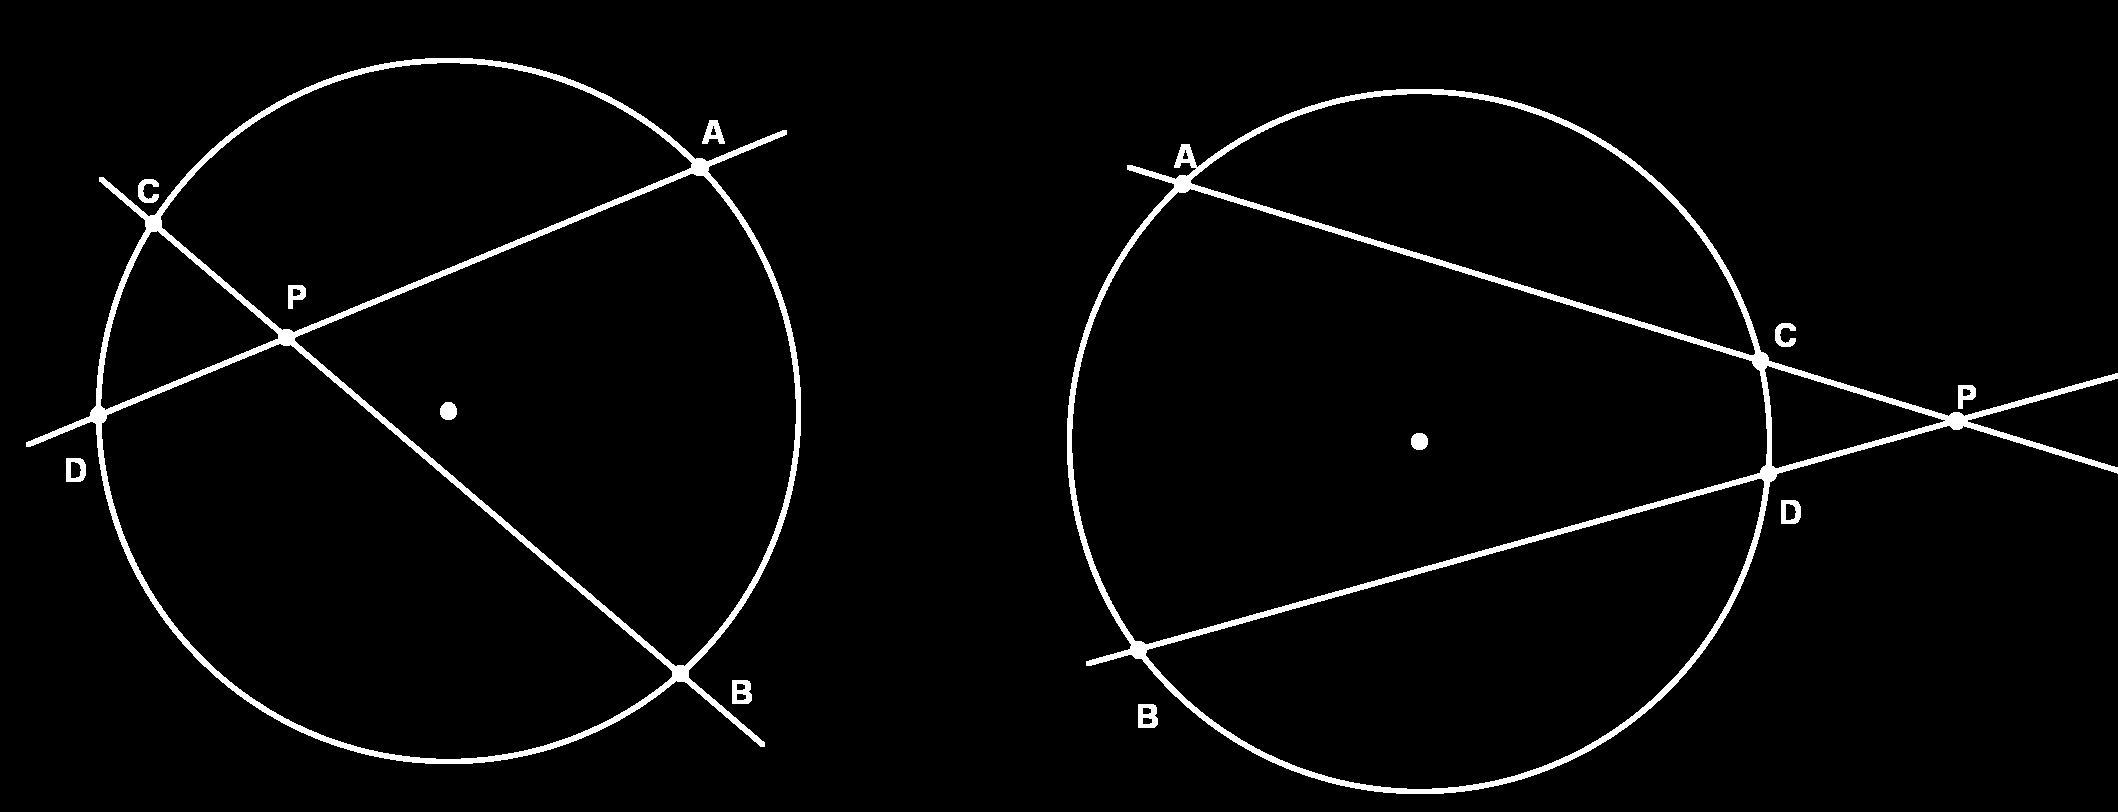 O Círculo gulo A ˆBC a intrseção dos seguintes dois semi-planos: o que contém o ponto C e é determinado por AB, e o que contém o ponto A e é determinado por BC.